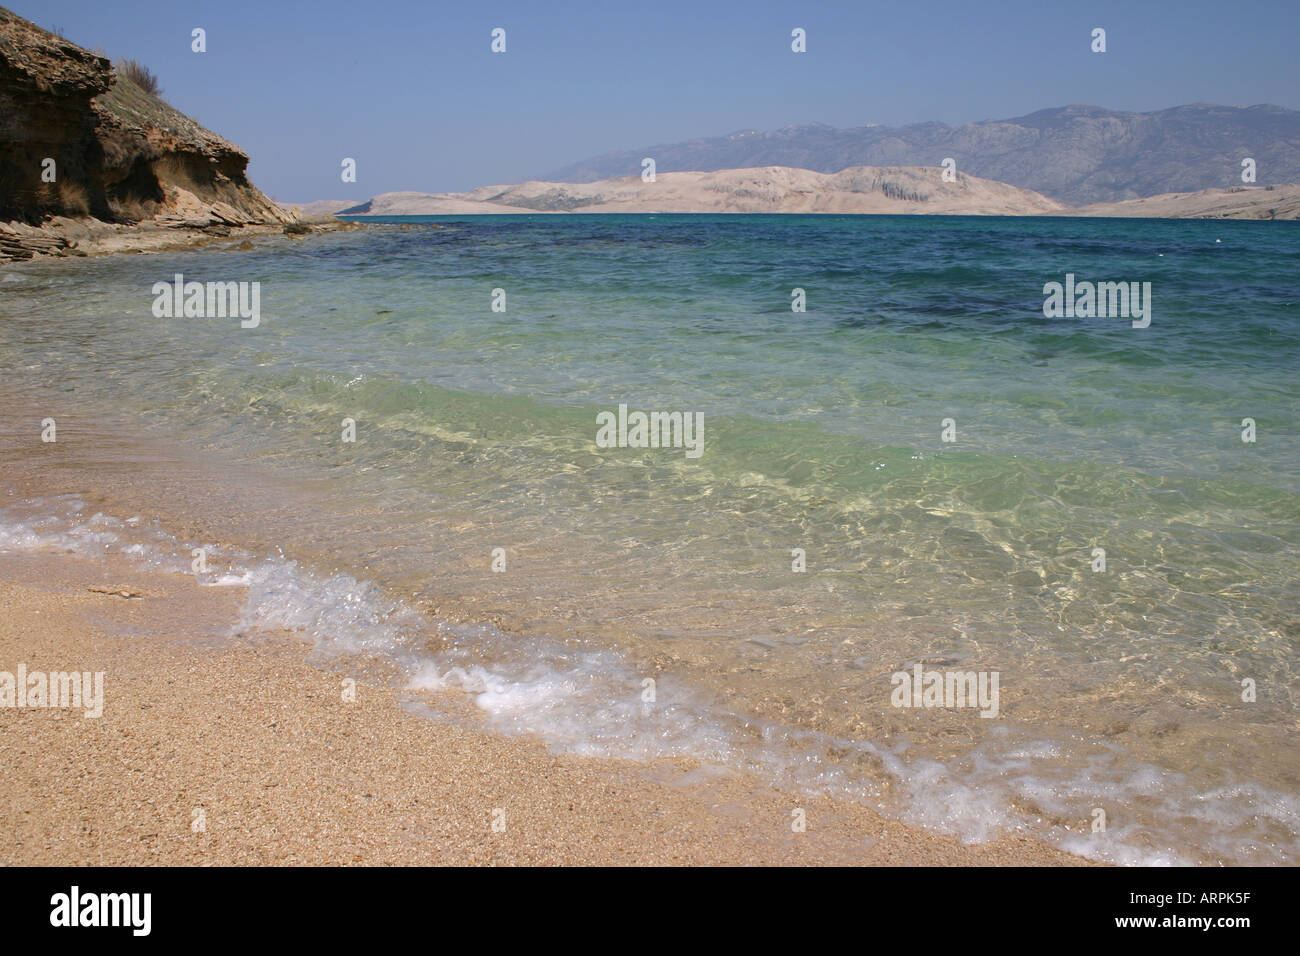 Adriatic Beach on Island of Pag, Dalmatia, Croatia. Stock Photo